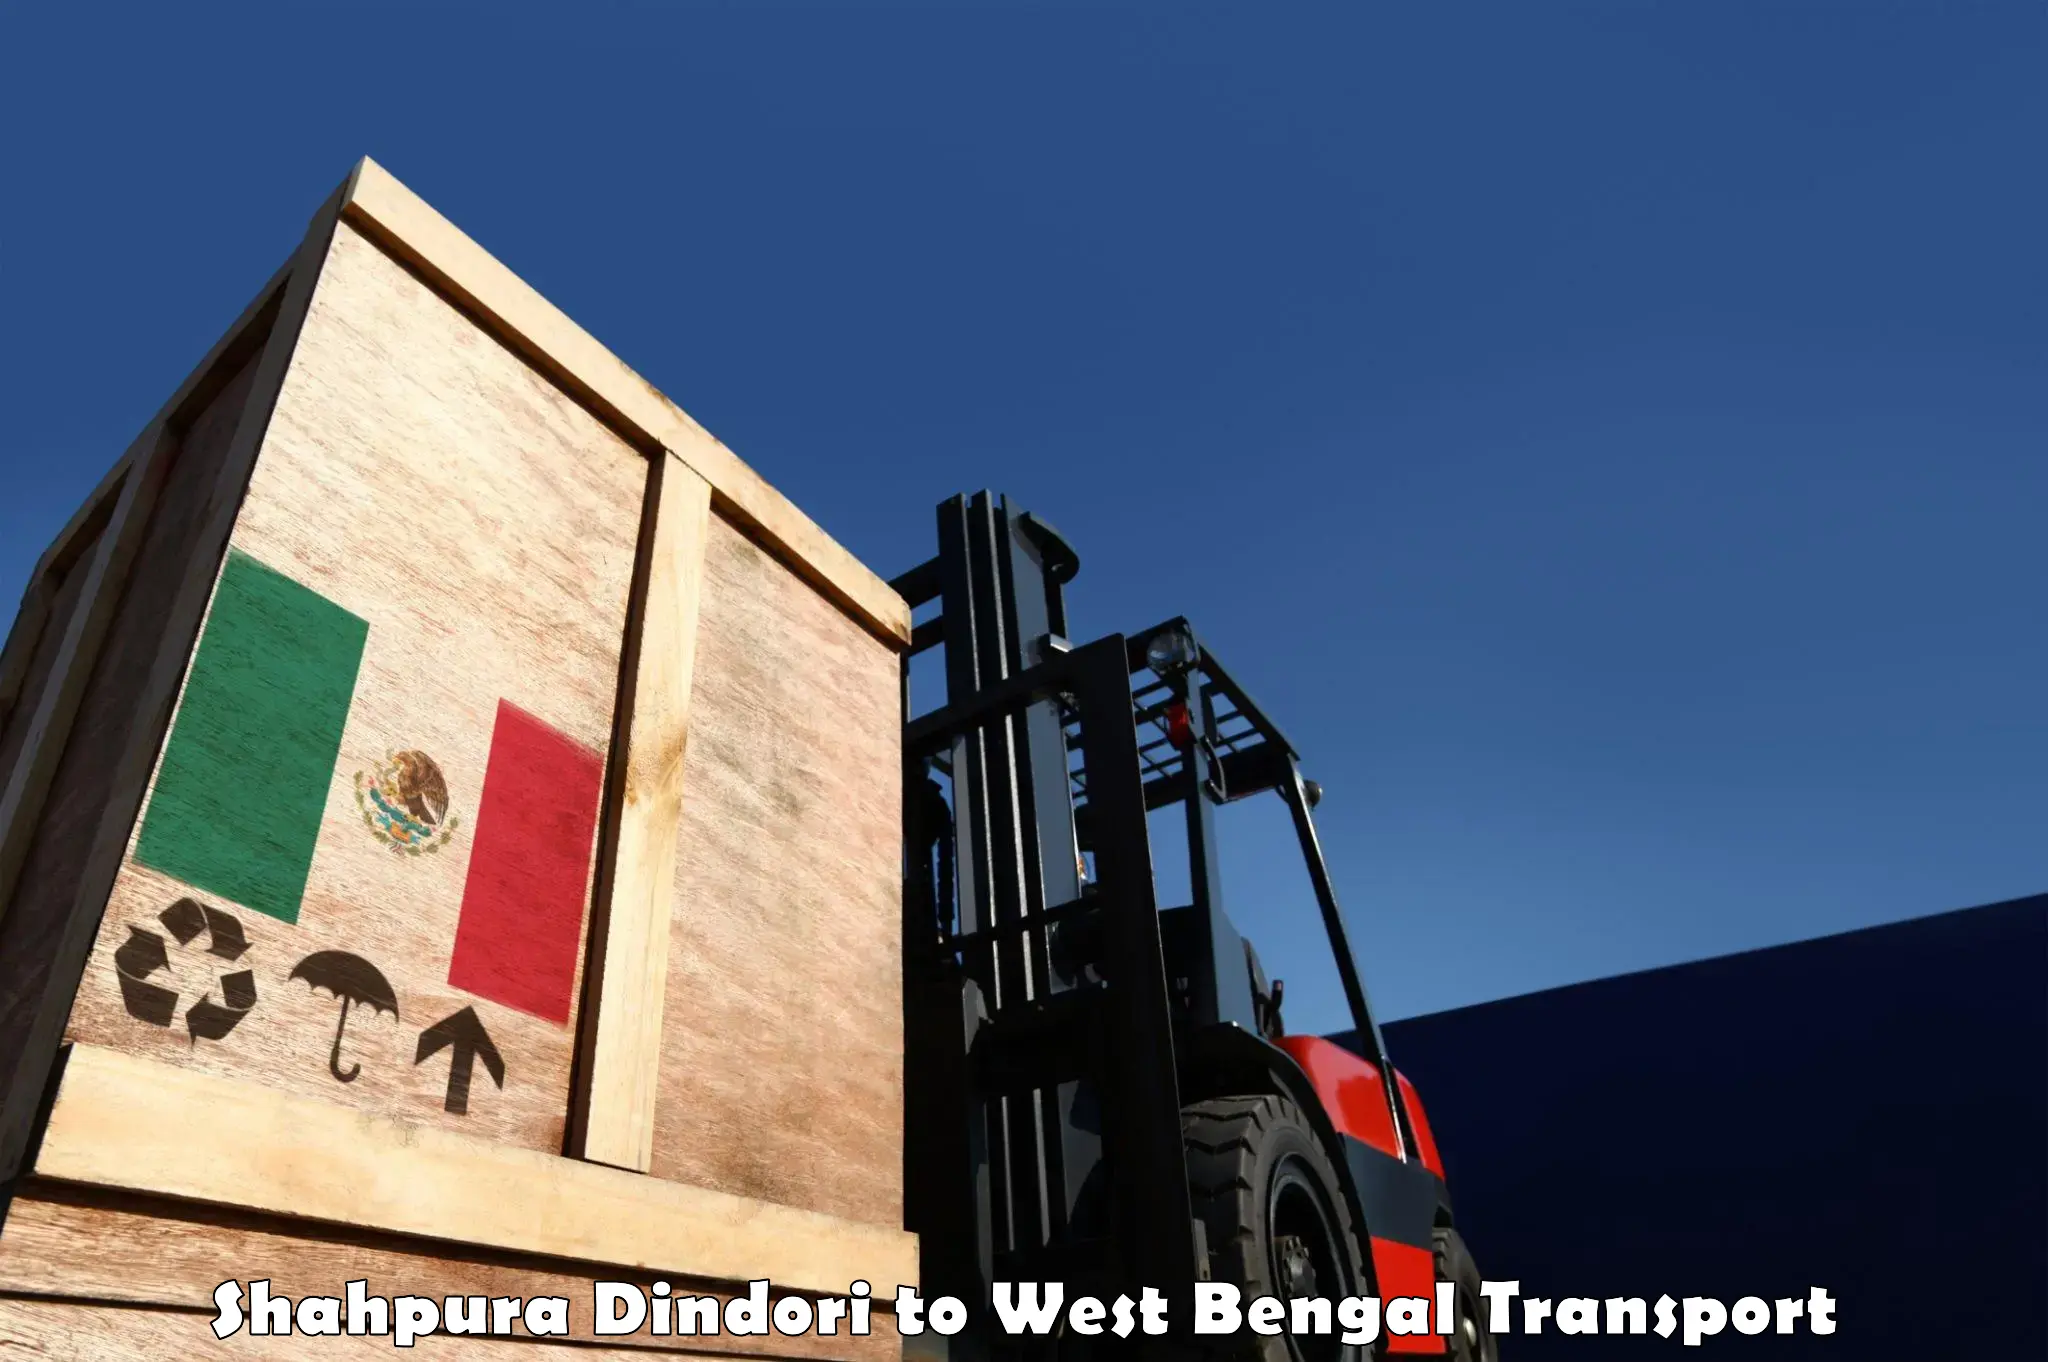 Container transport service Shahpura Dindori to Durgapur